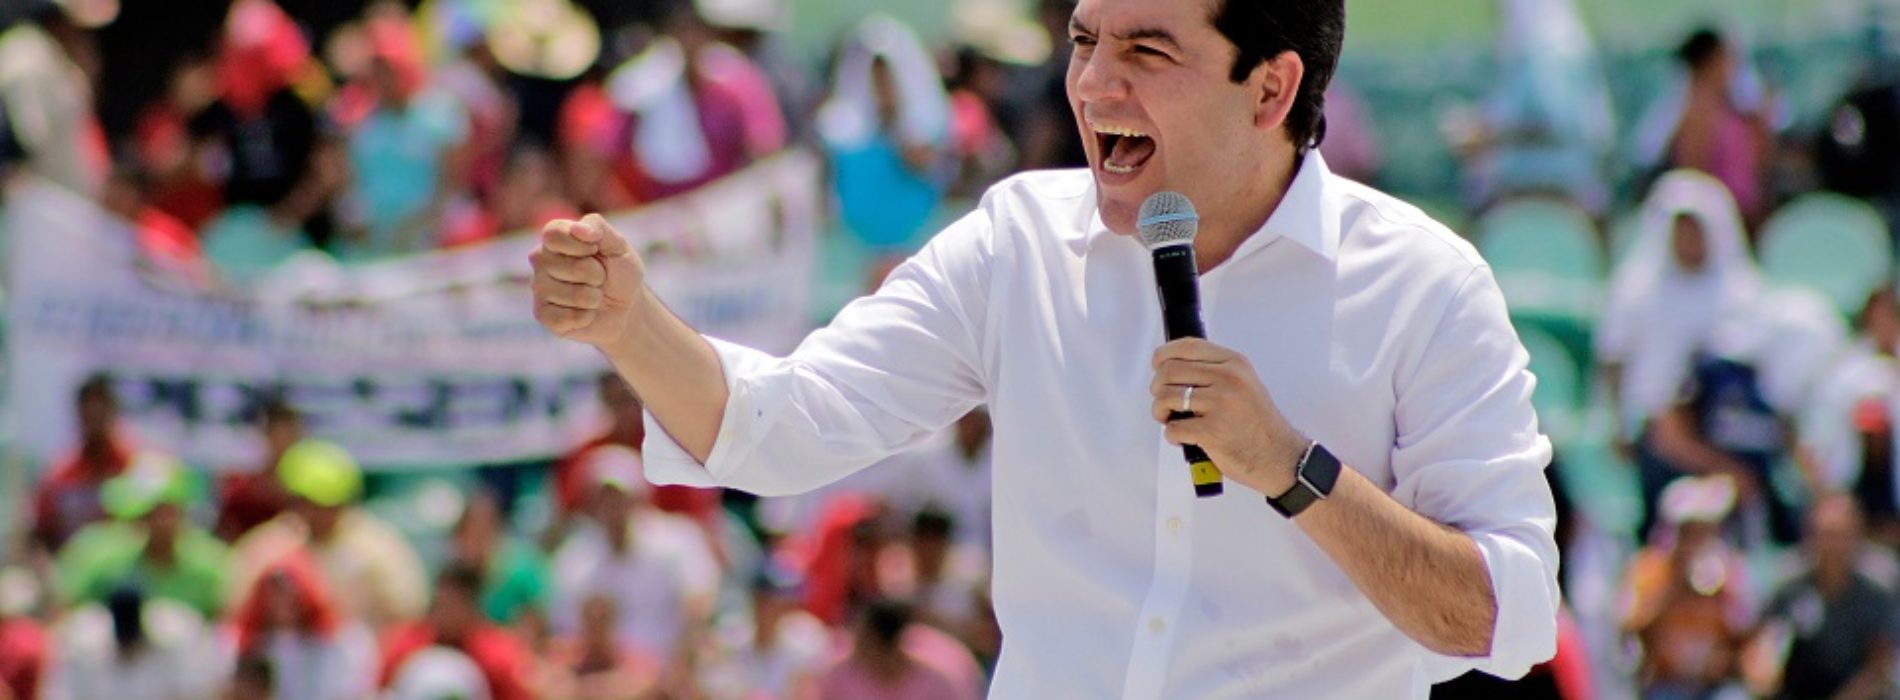 Por participar en más de una coalición tiran alianza Todos
por Chiapas